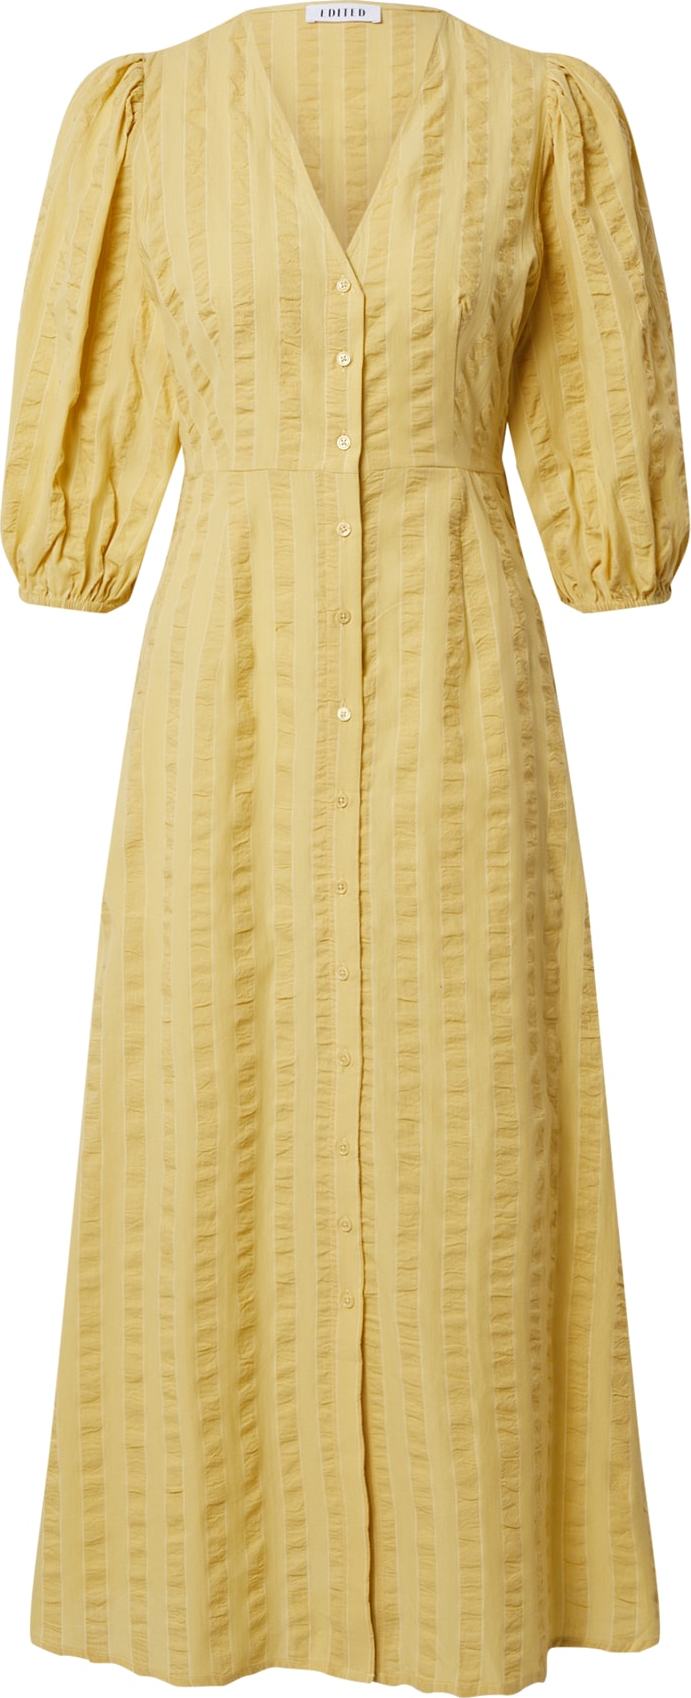 EDITED Košilové šaty 'Elena' žlutá